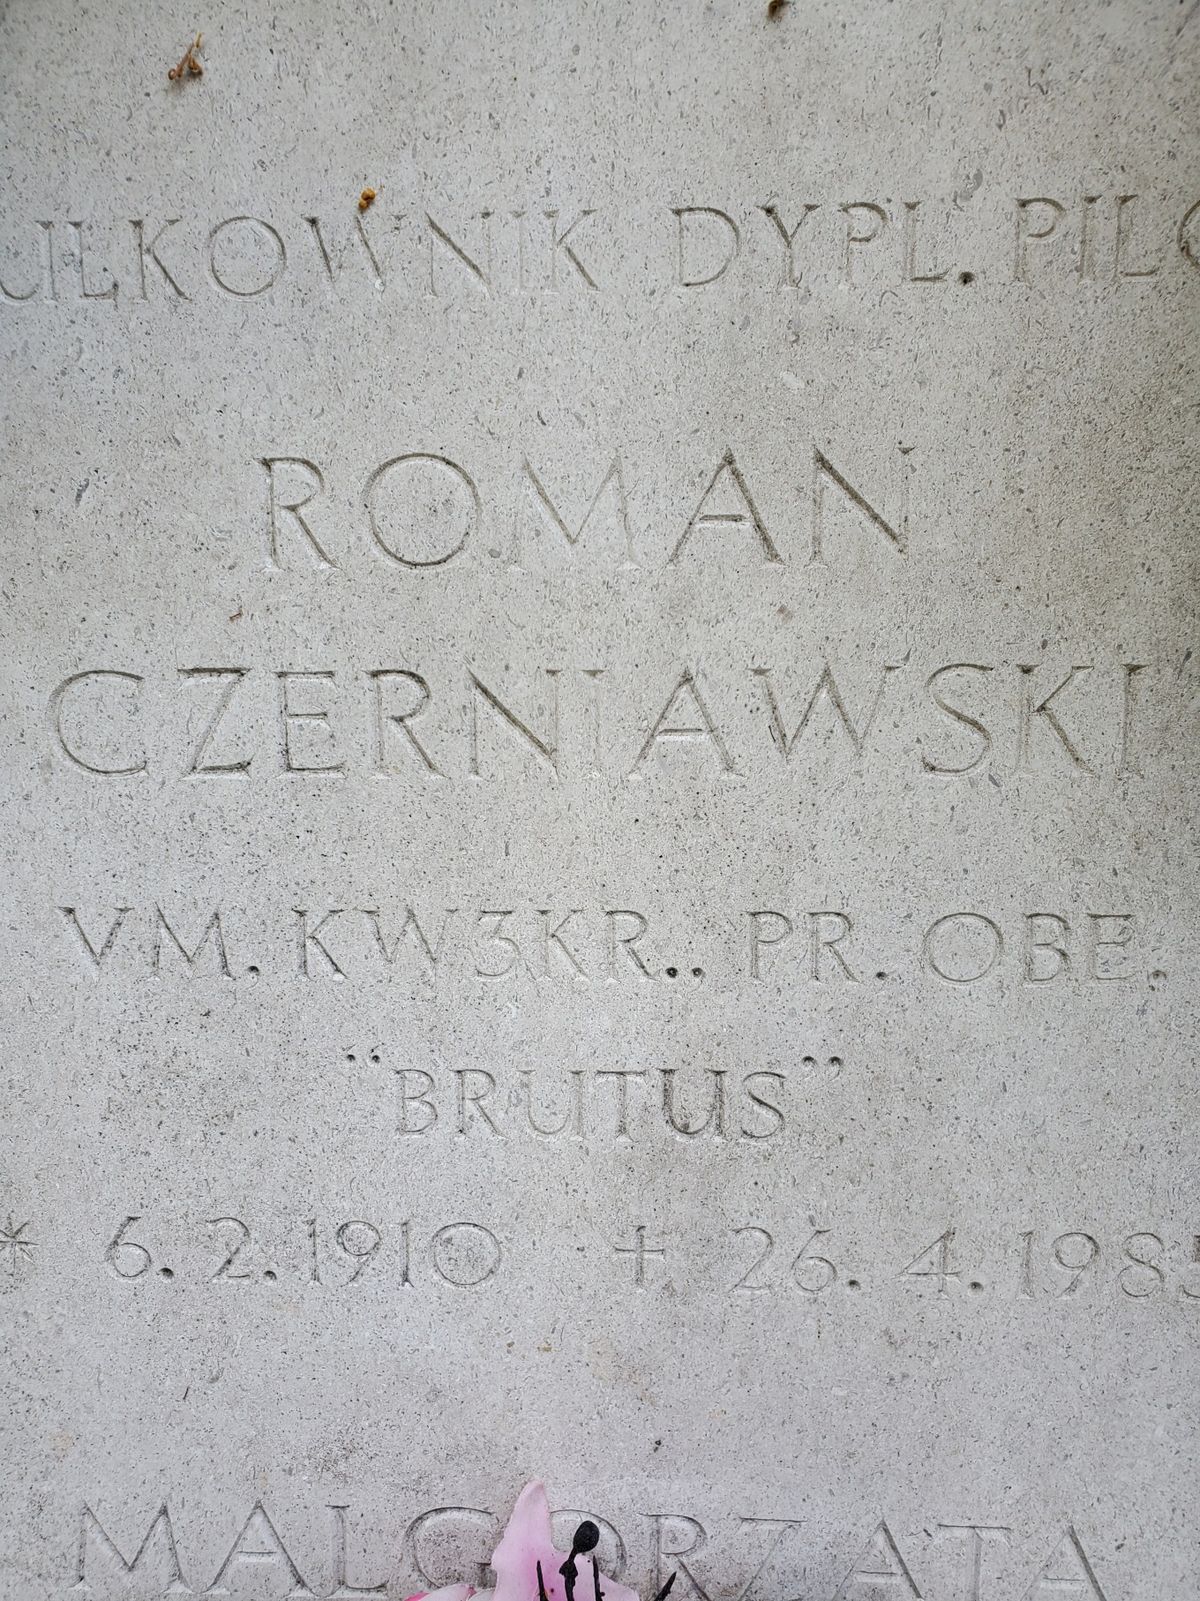 Tombstone of Małgorzata Czerniawska and Roman Czerniawski